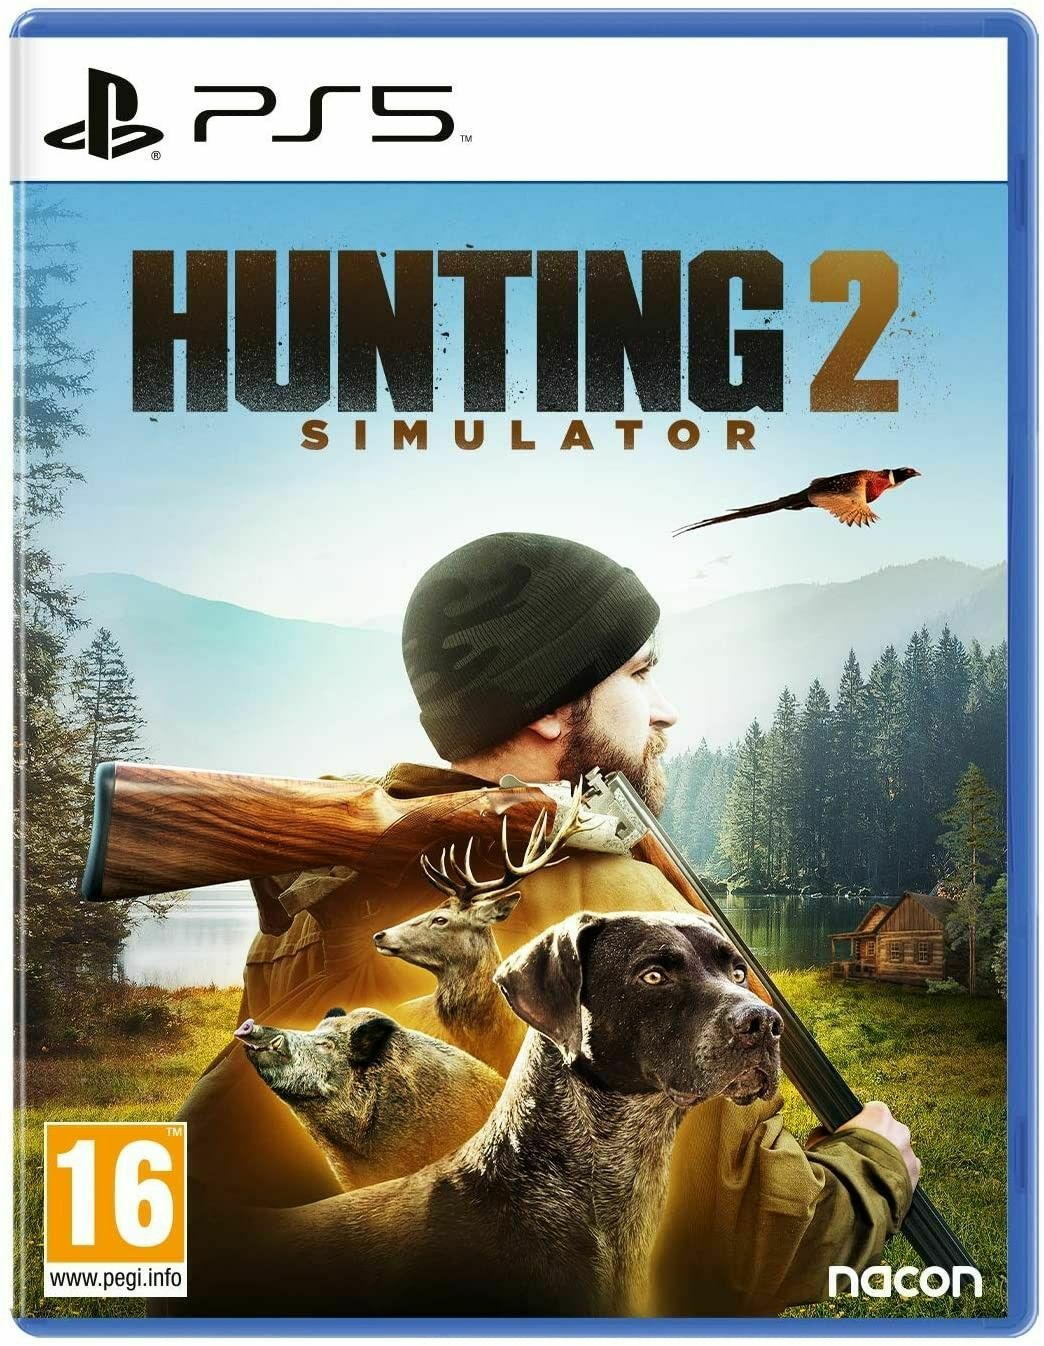 h/hunting simulator 2